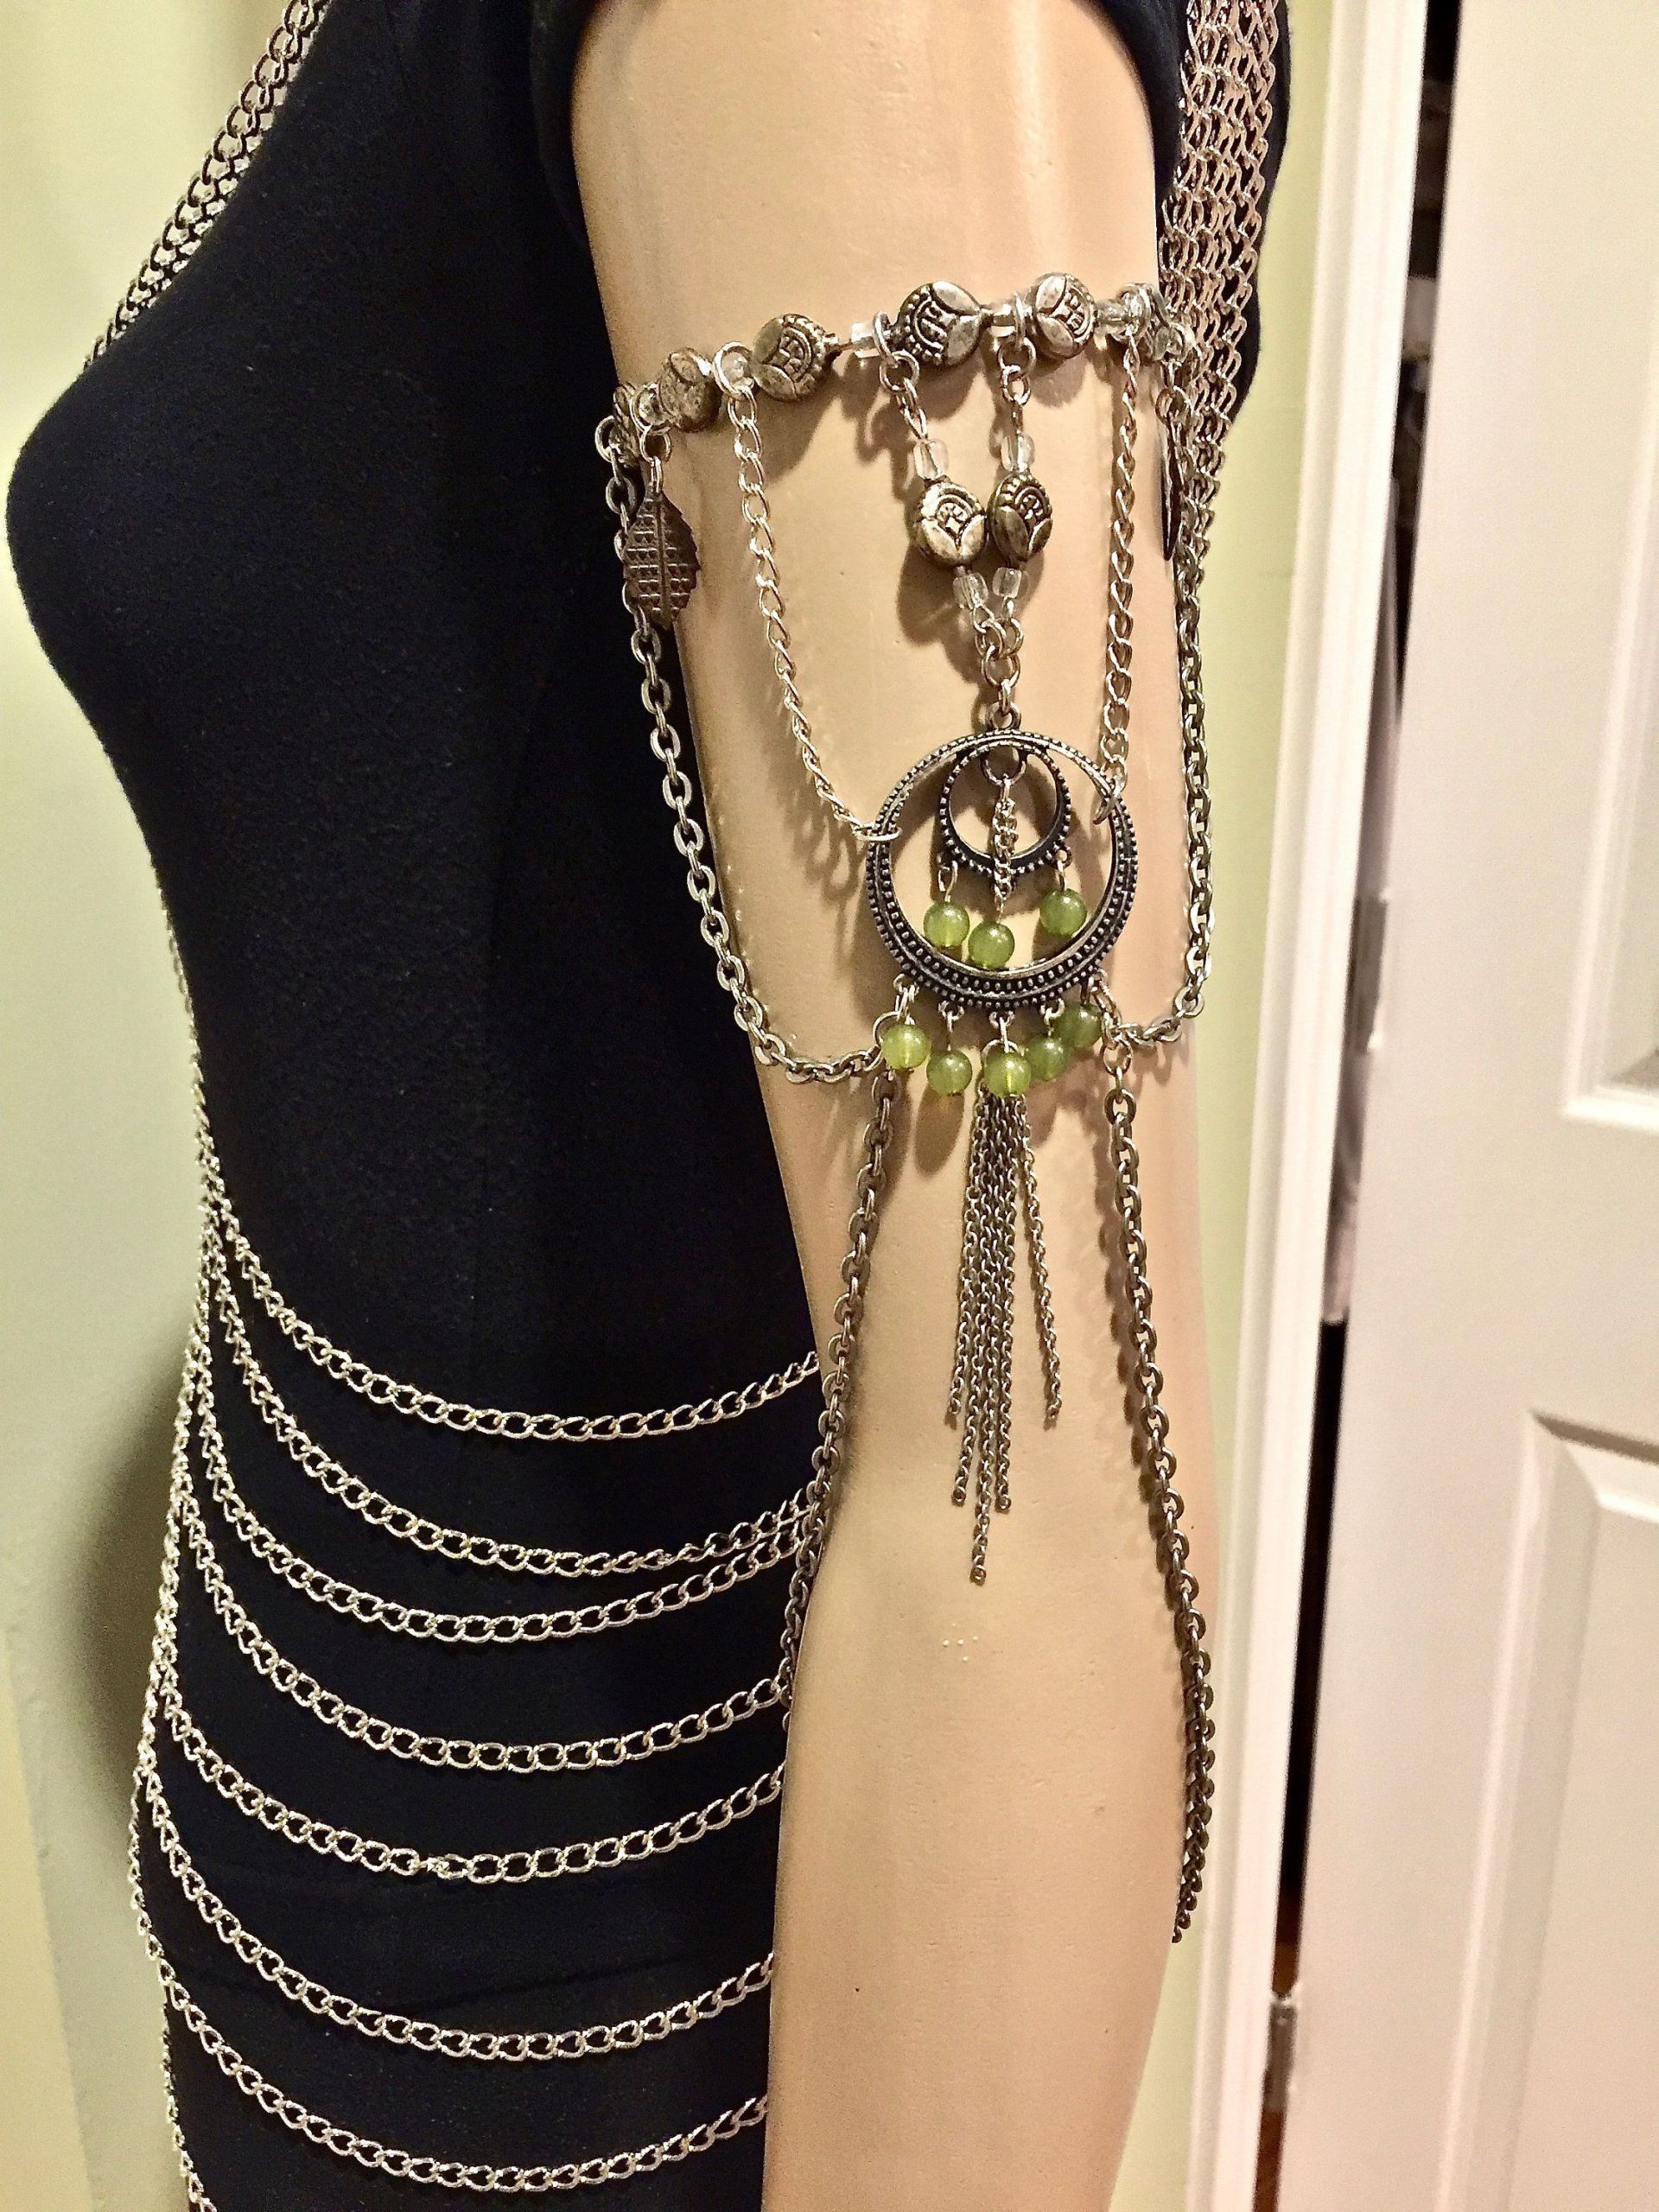 Body Jewelry Arm
 Armlet Arm Chain Upper Arm Bracelet Silver Metal Arm